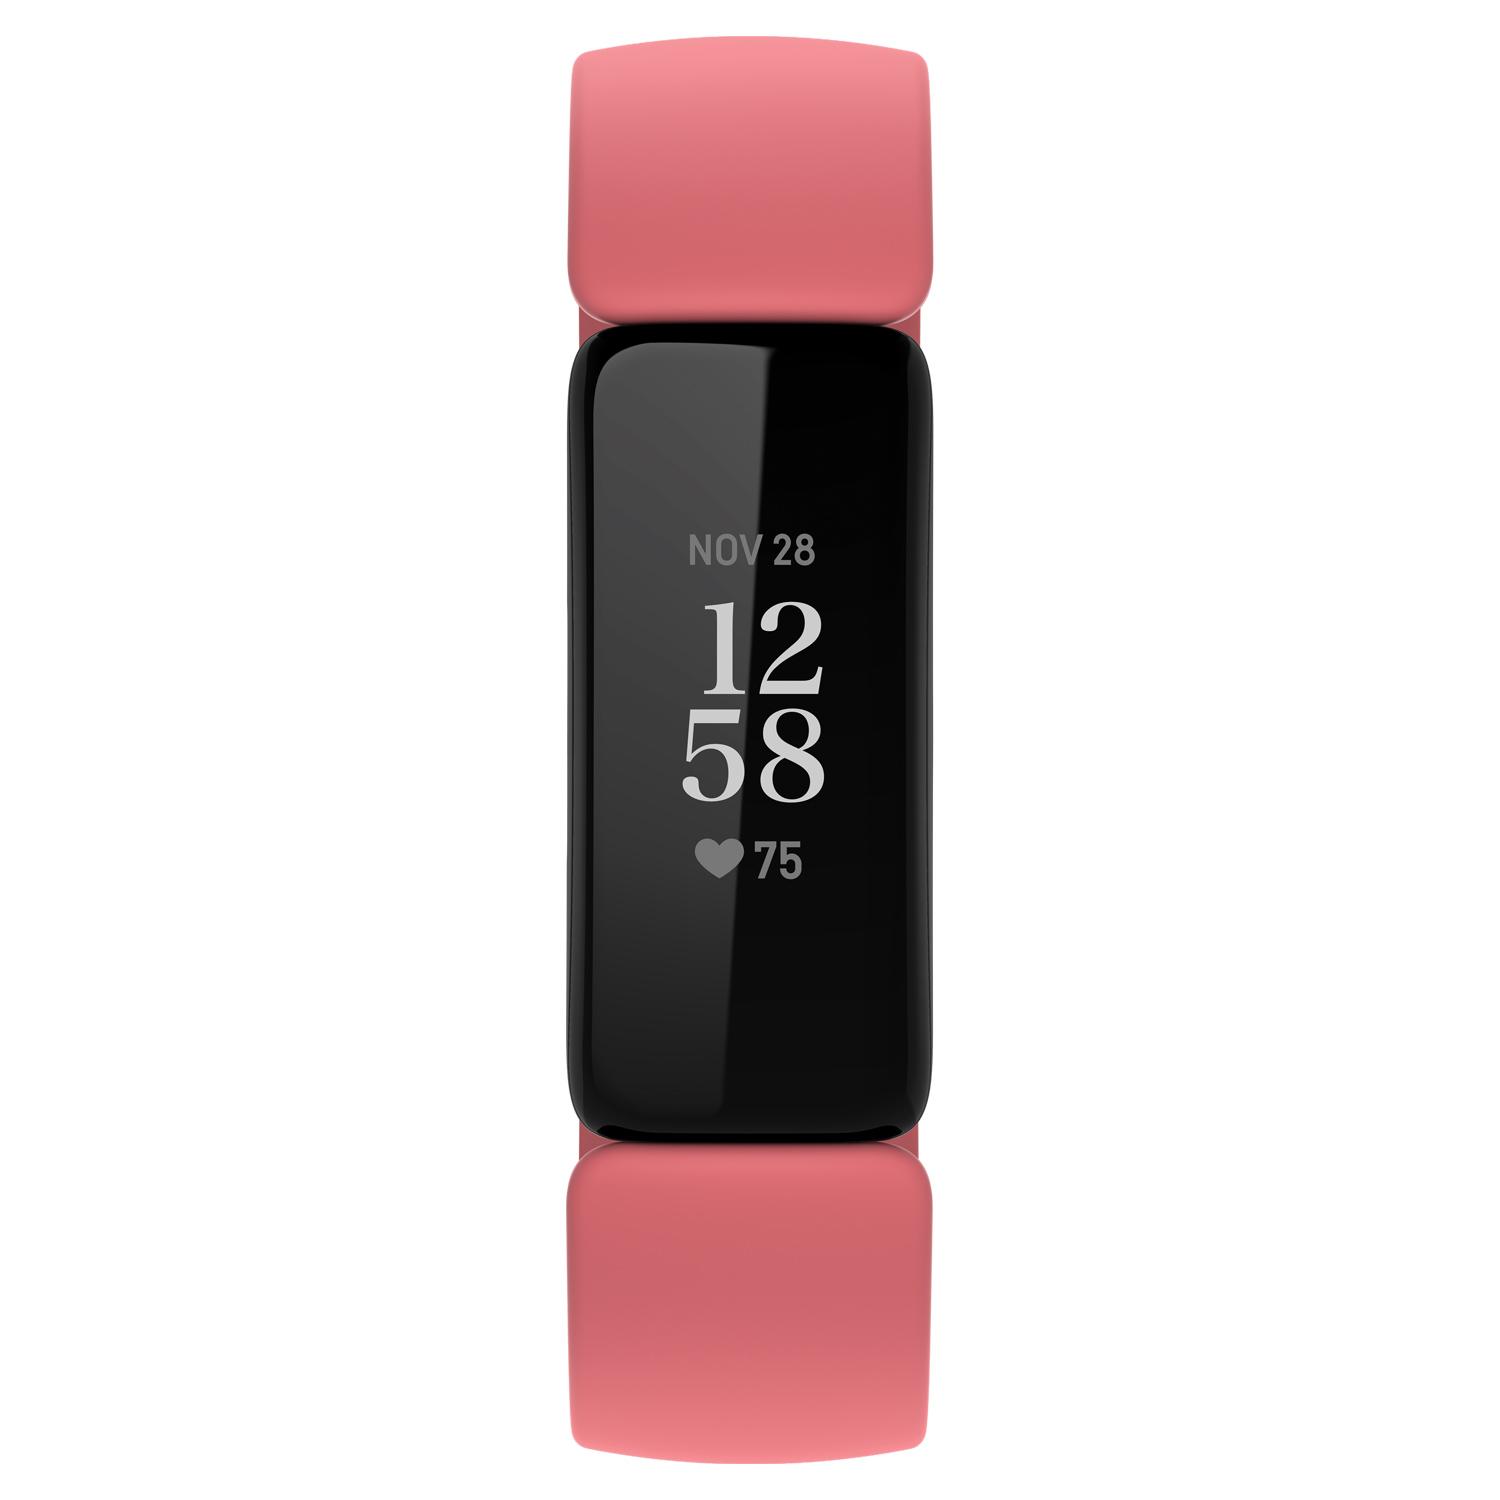 Fitbit Inspire 2-košík pre koraly 0 MB Bluetooth